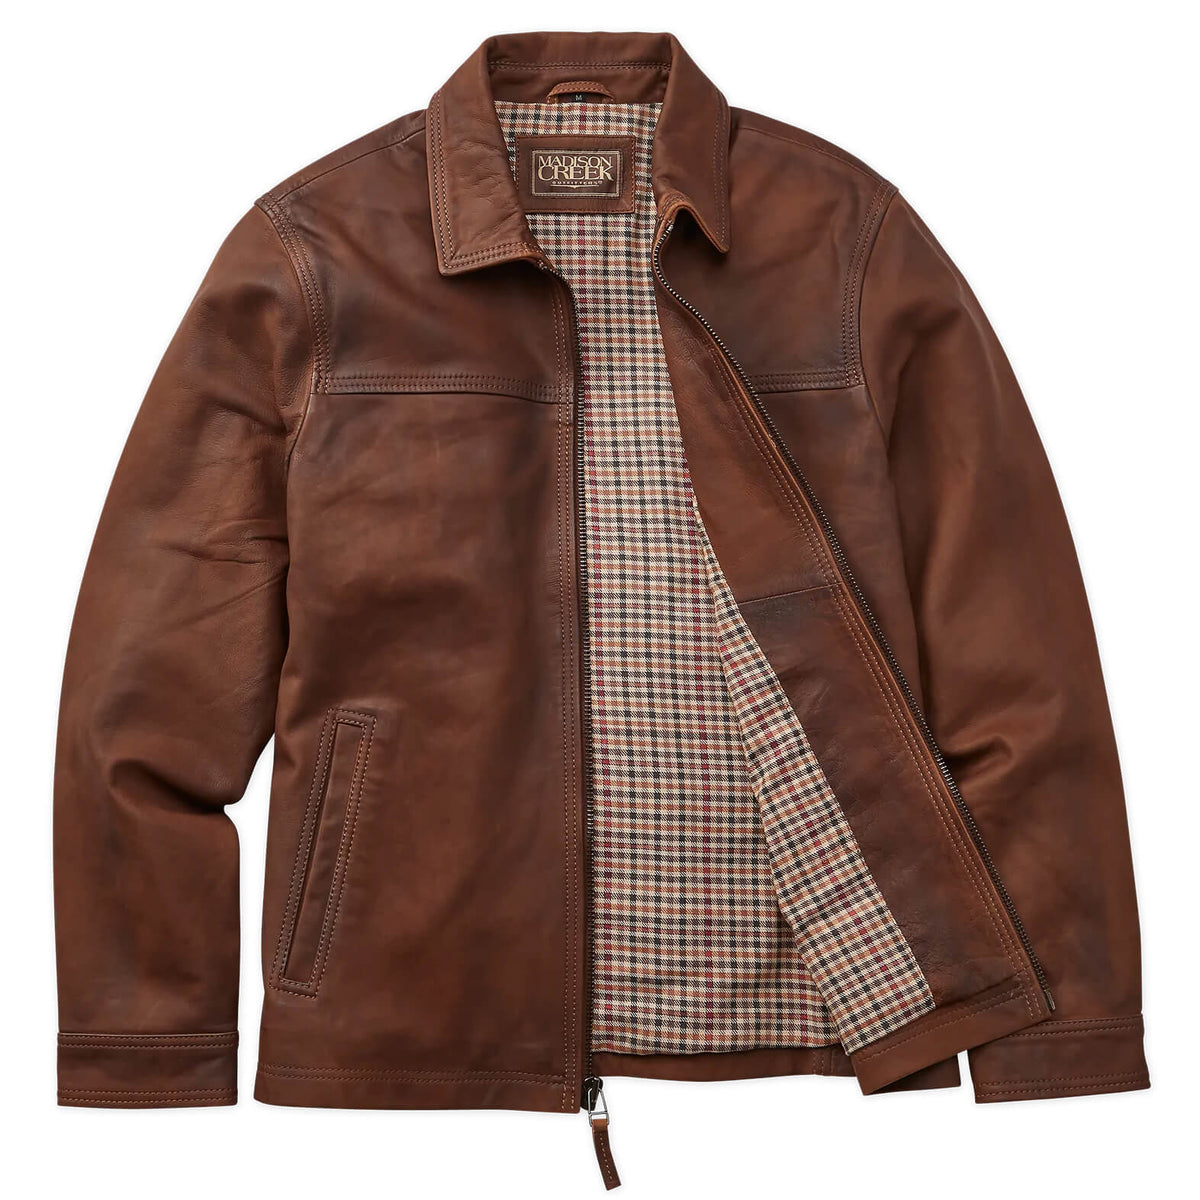 Hickory Leather Jacket